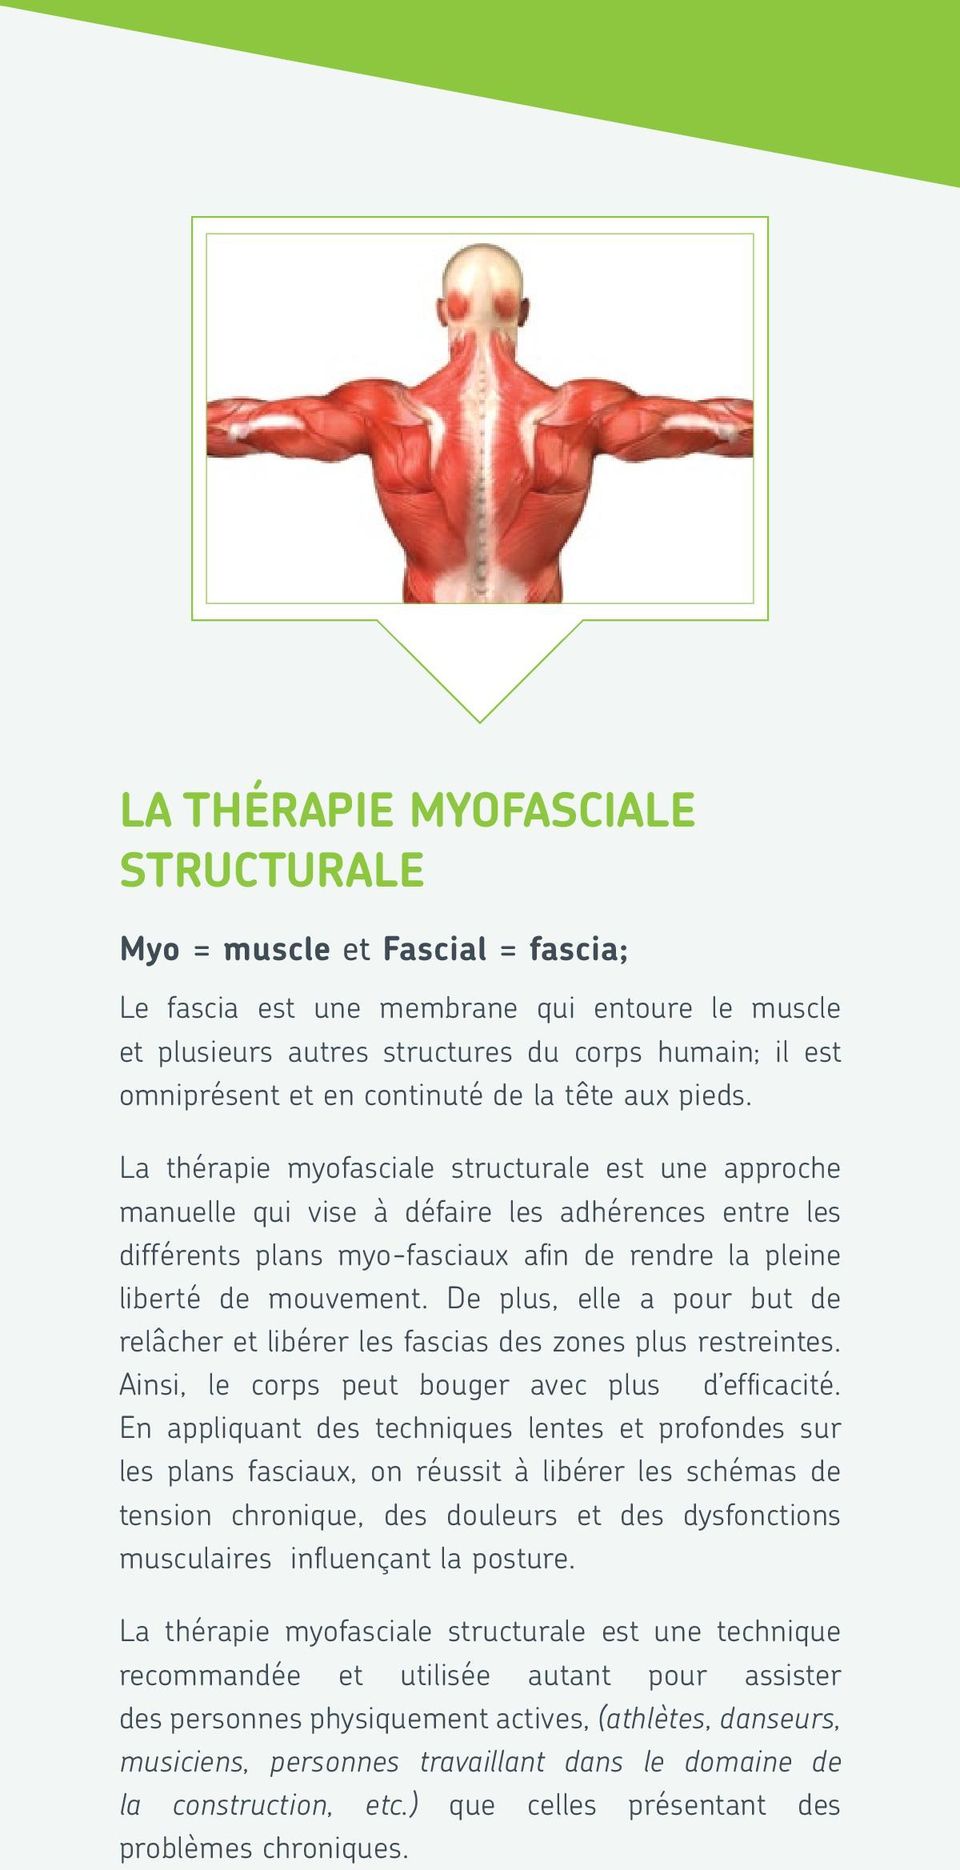 La thérapie myofasciale structurale est une approche manuelle qui vise à défaire les adhérences entre les différents plans myo-fasciaux afin de rendre la pleine liberté de mouvement.